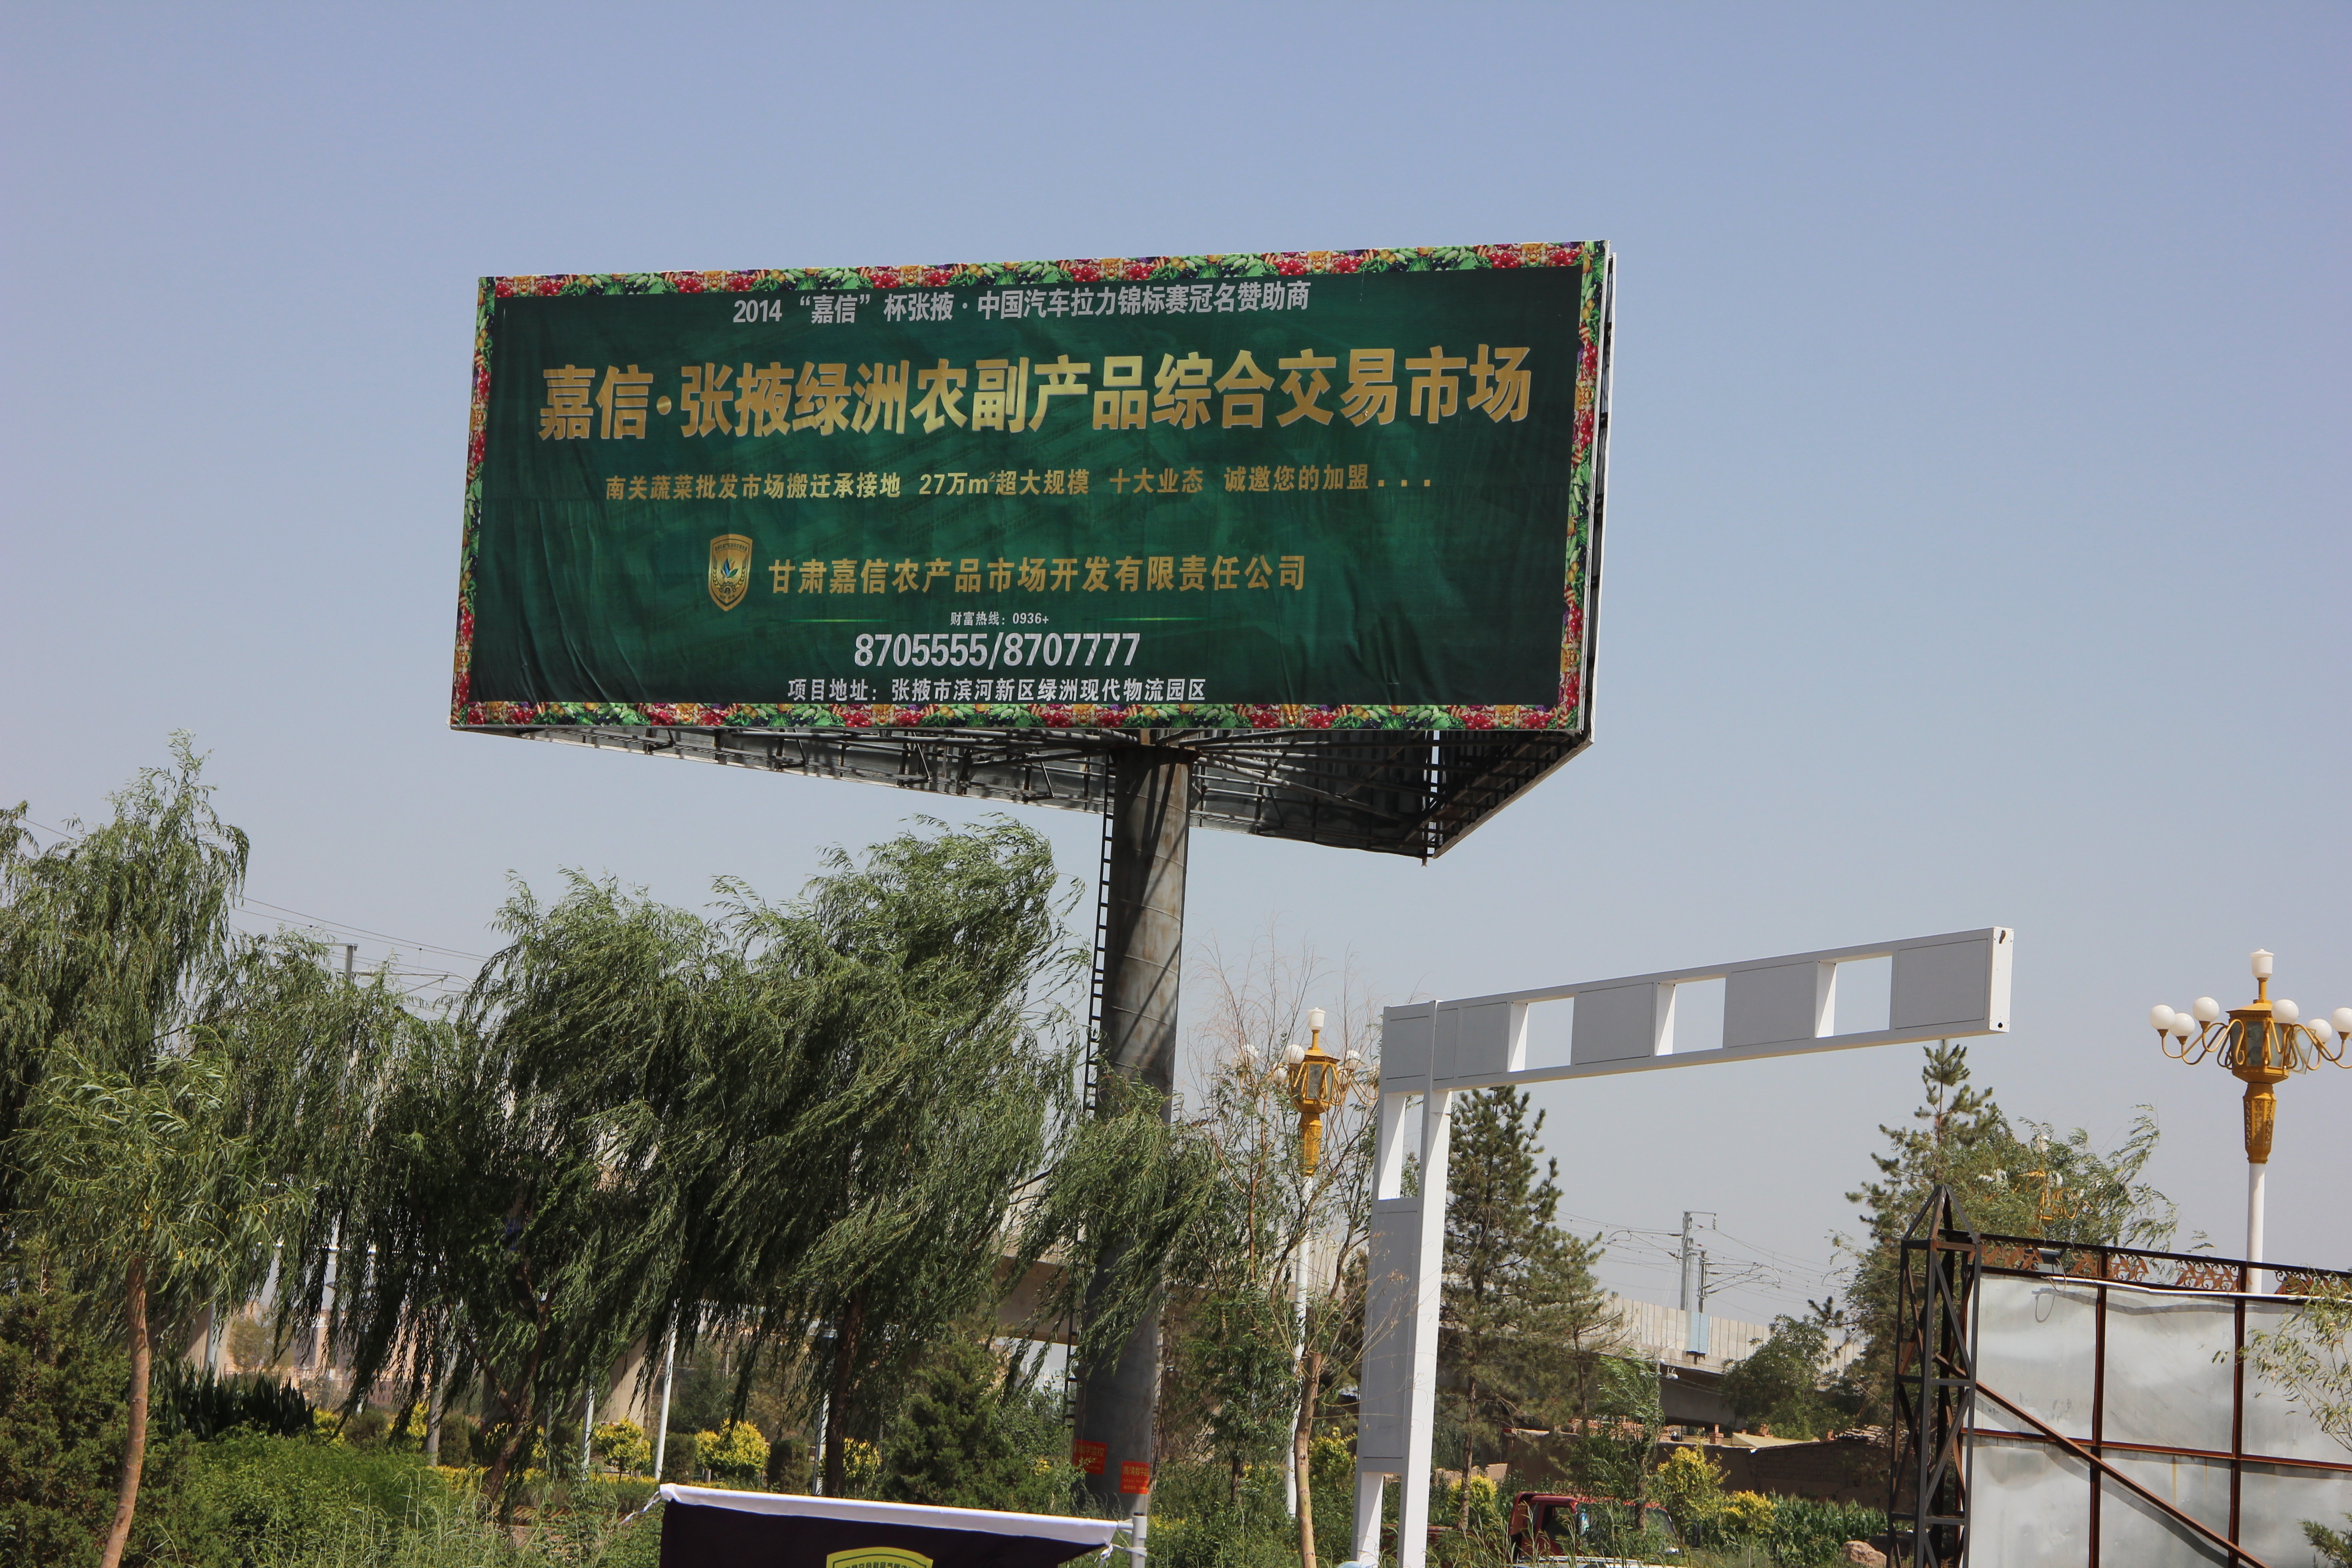 甘肃张掖绿洲农副产品综合交易市场正在成为河西走廊“菜篮子”交易“航母”